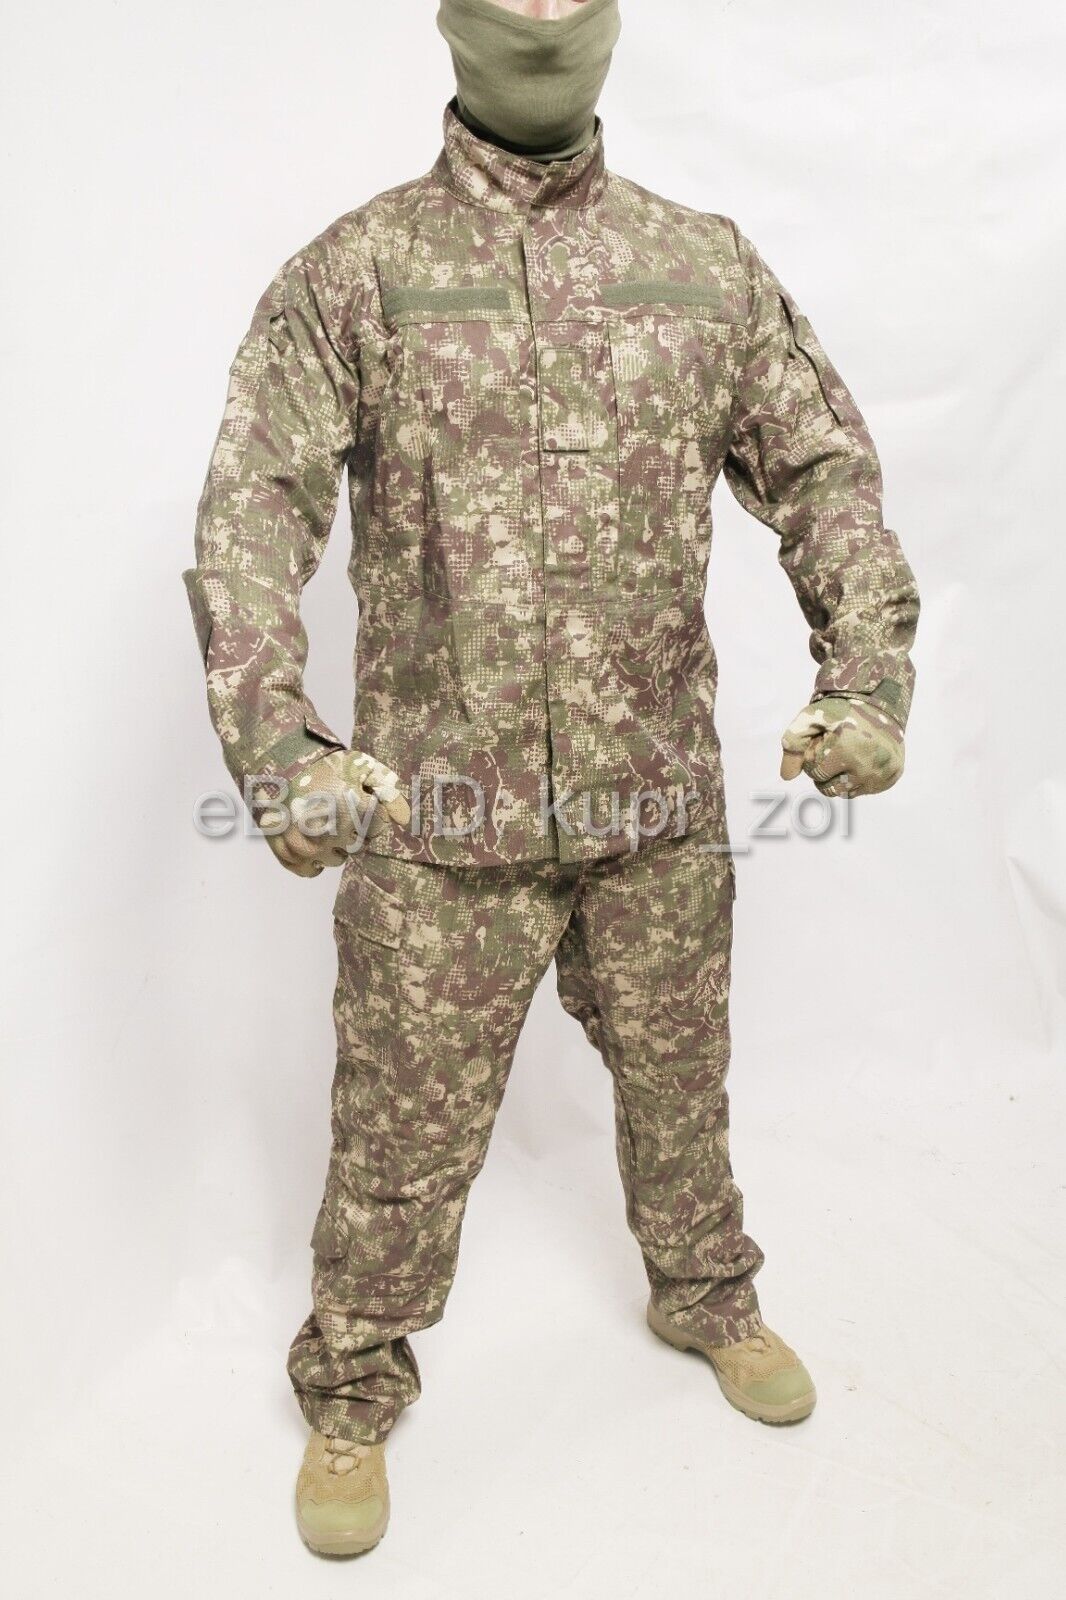 Uniform Ukraine Army PREDATOR CAMO ORIGINAL SUIT Ukrainian W A R ALL SIZES